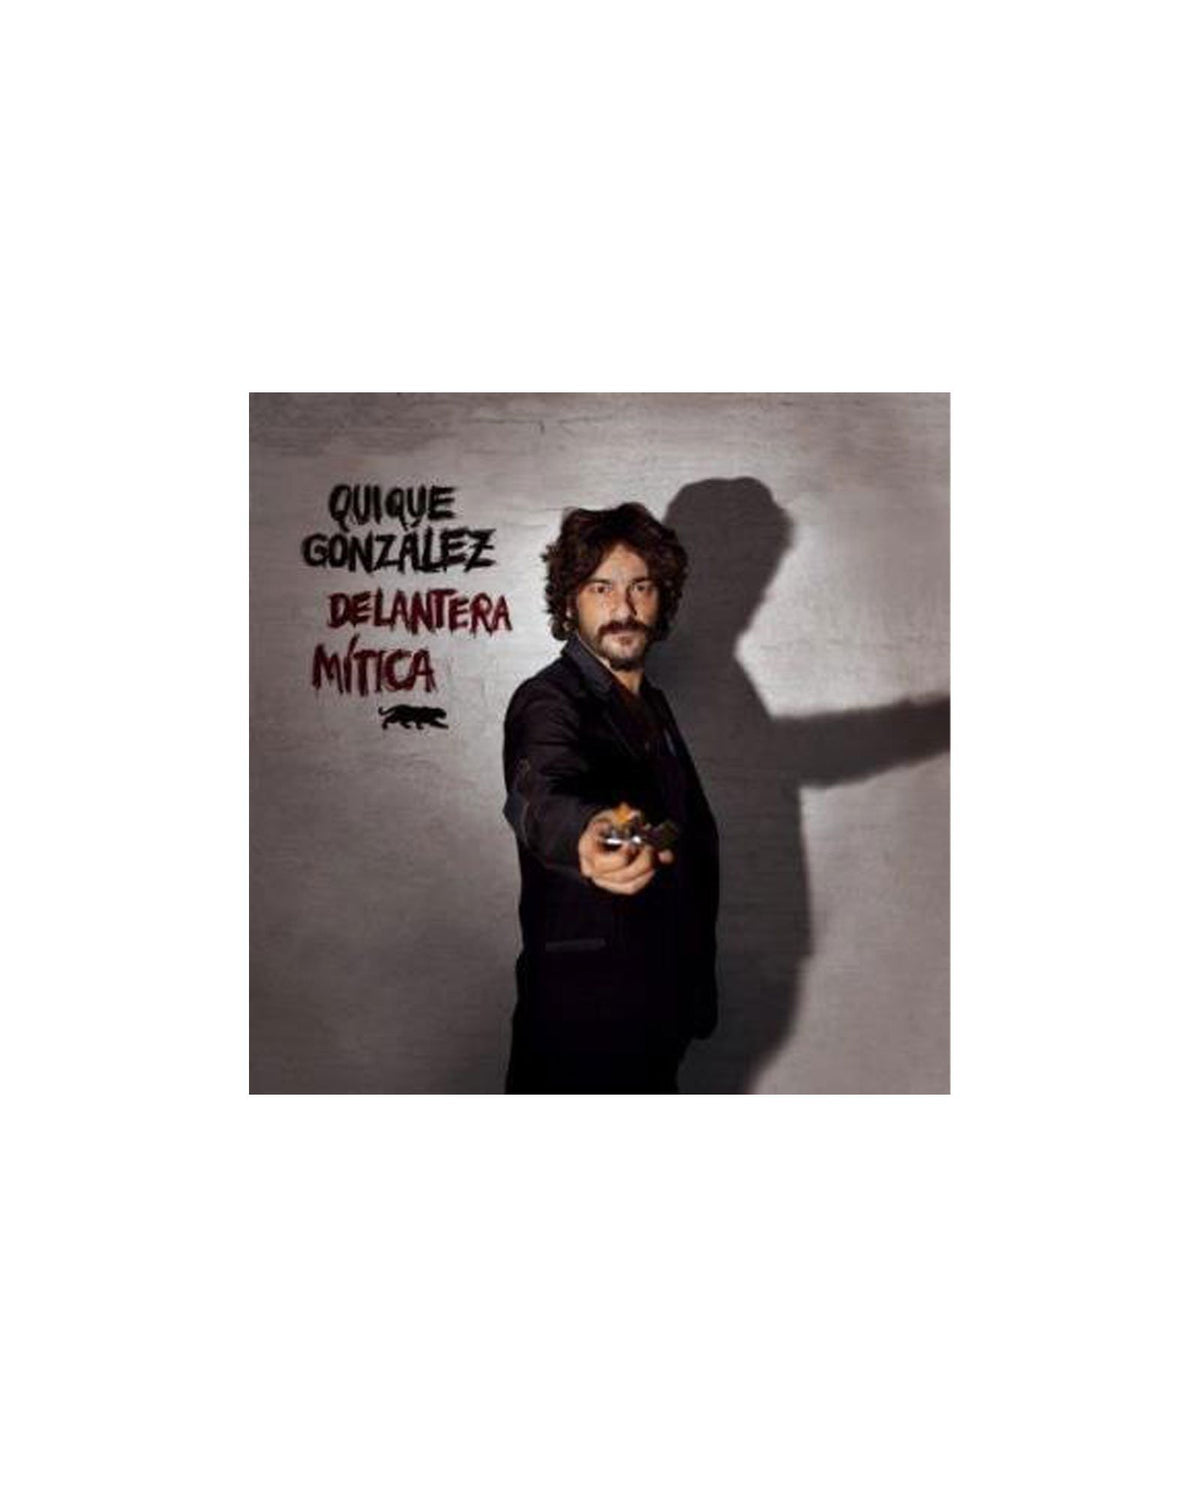 LP DELANTERA MÍTICA (INCLUYE CD) - Quique González - Rocktud - Quique González